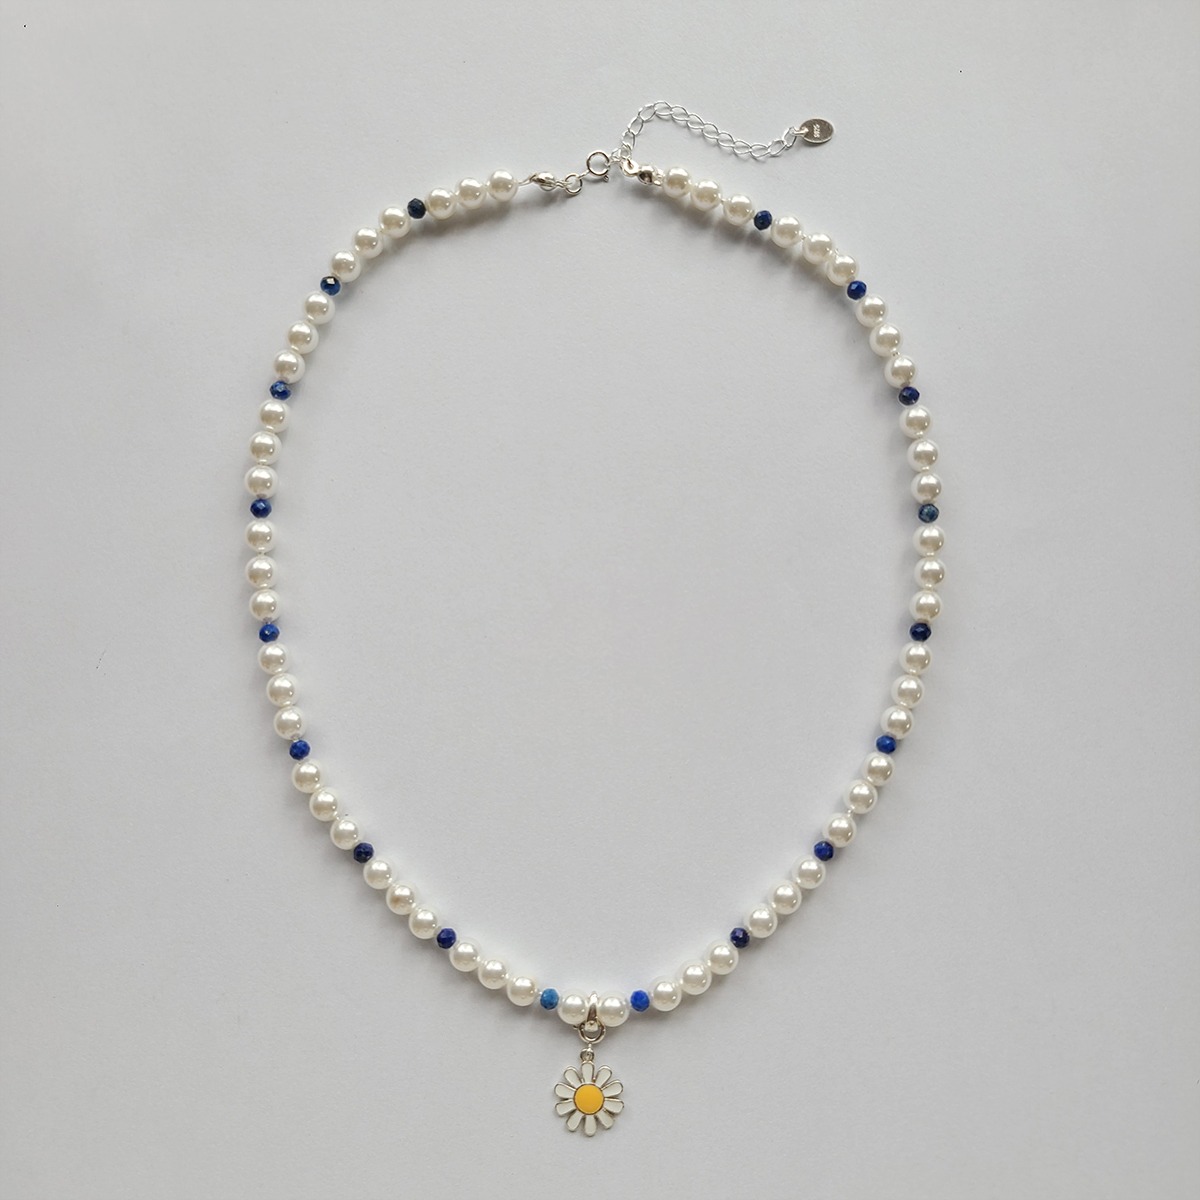 03. [daisy necklace]